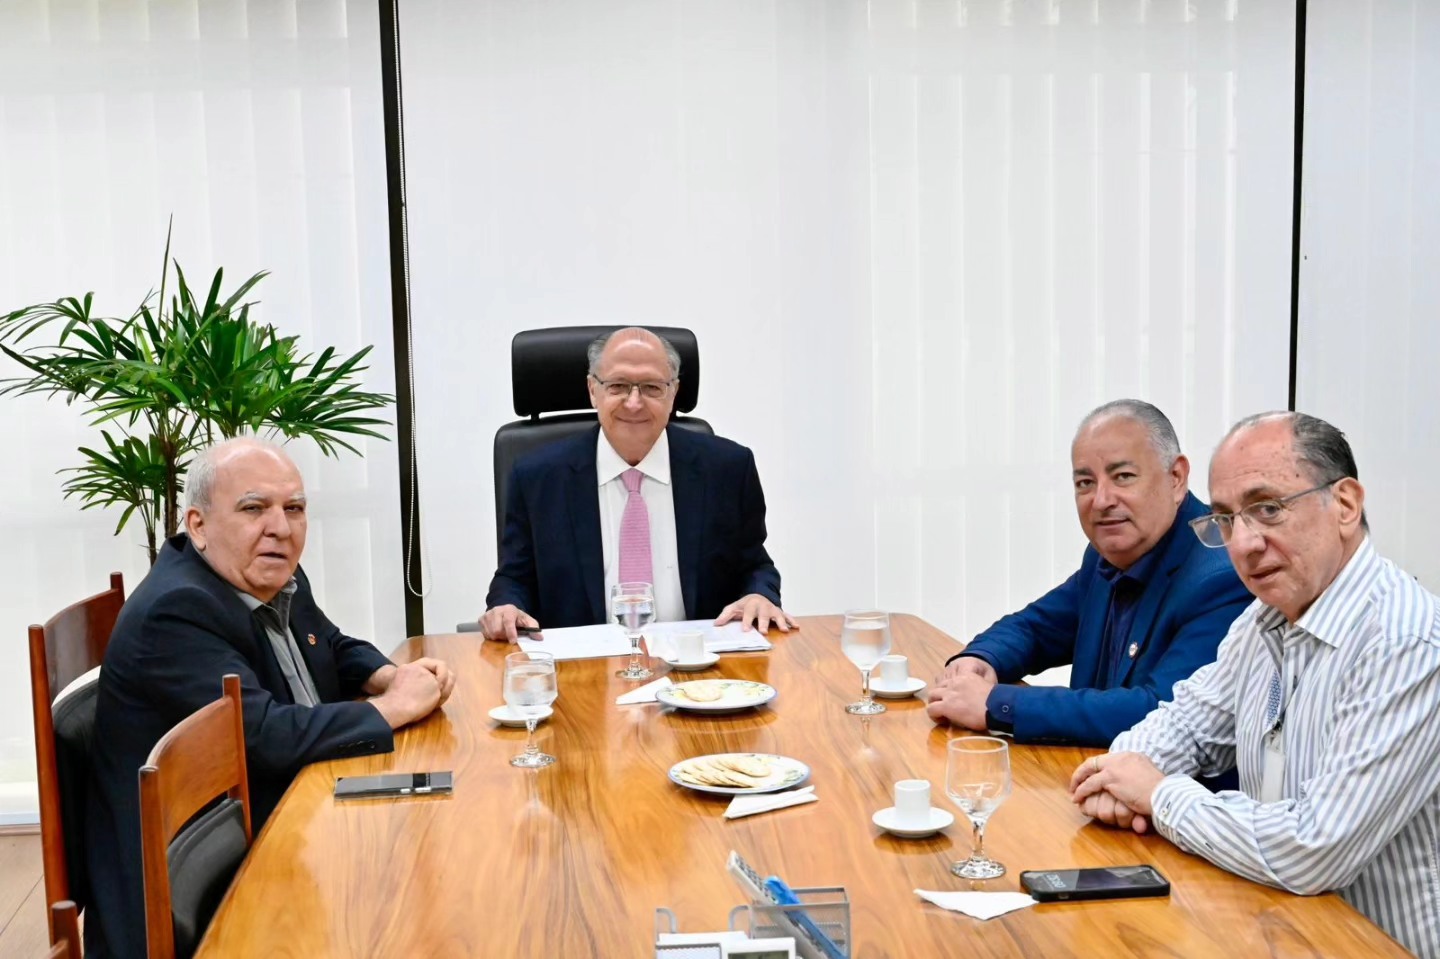 Presidentes das centrais conversam com Geraldo Alckmin sobre reindustrialização